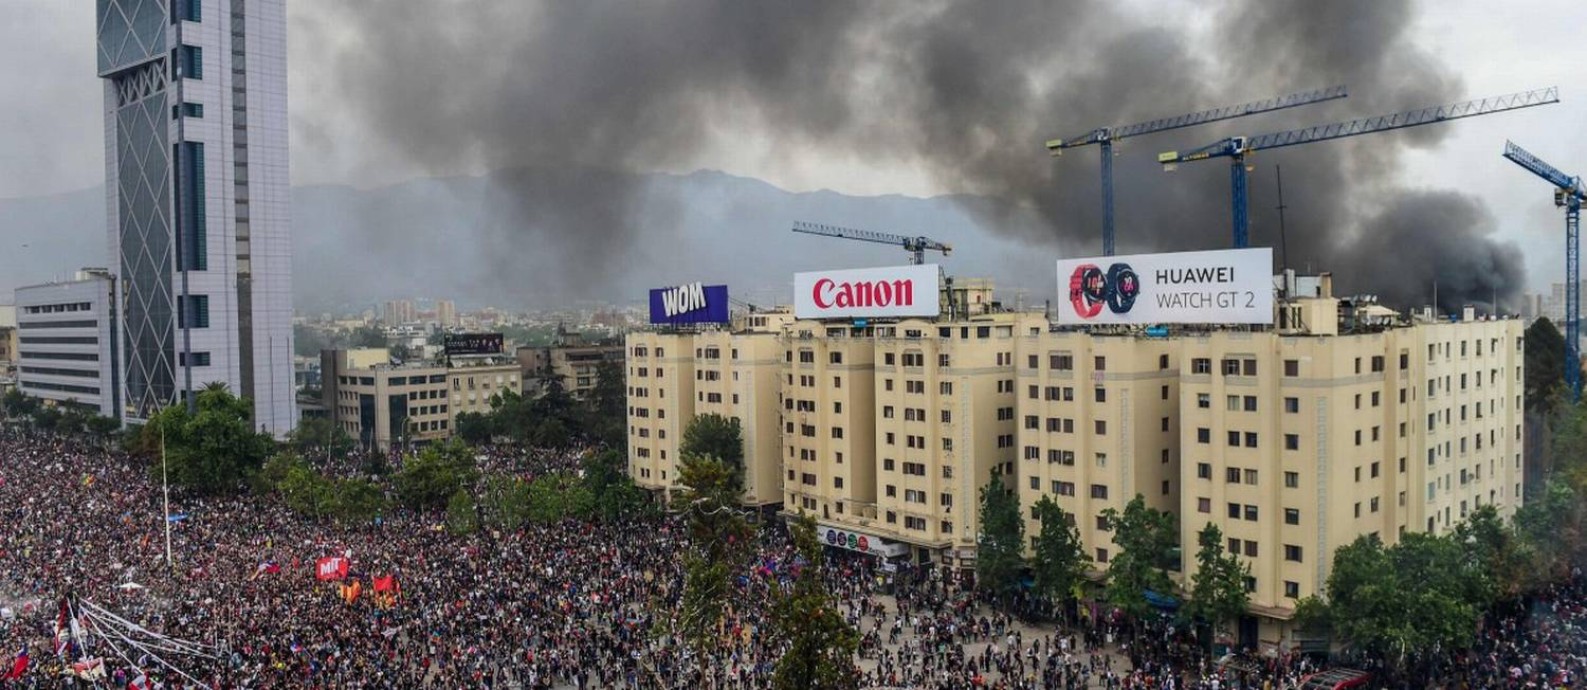 Fumaça da Universidade Pedro de Valdivia, incendiada por mascarados, é vista durante grande marcha na Praça Itália Foto: MARTIN BERNETTI / AFP